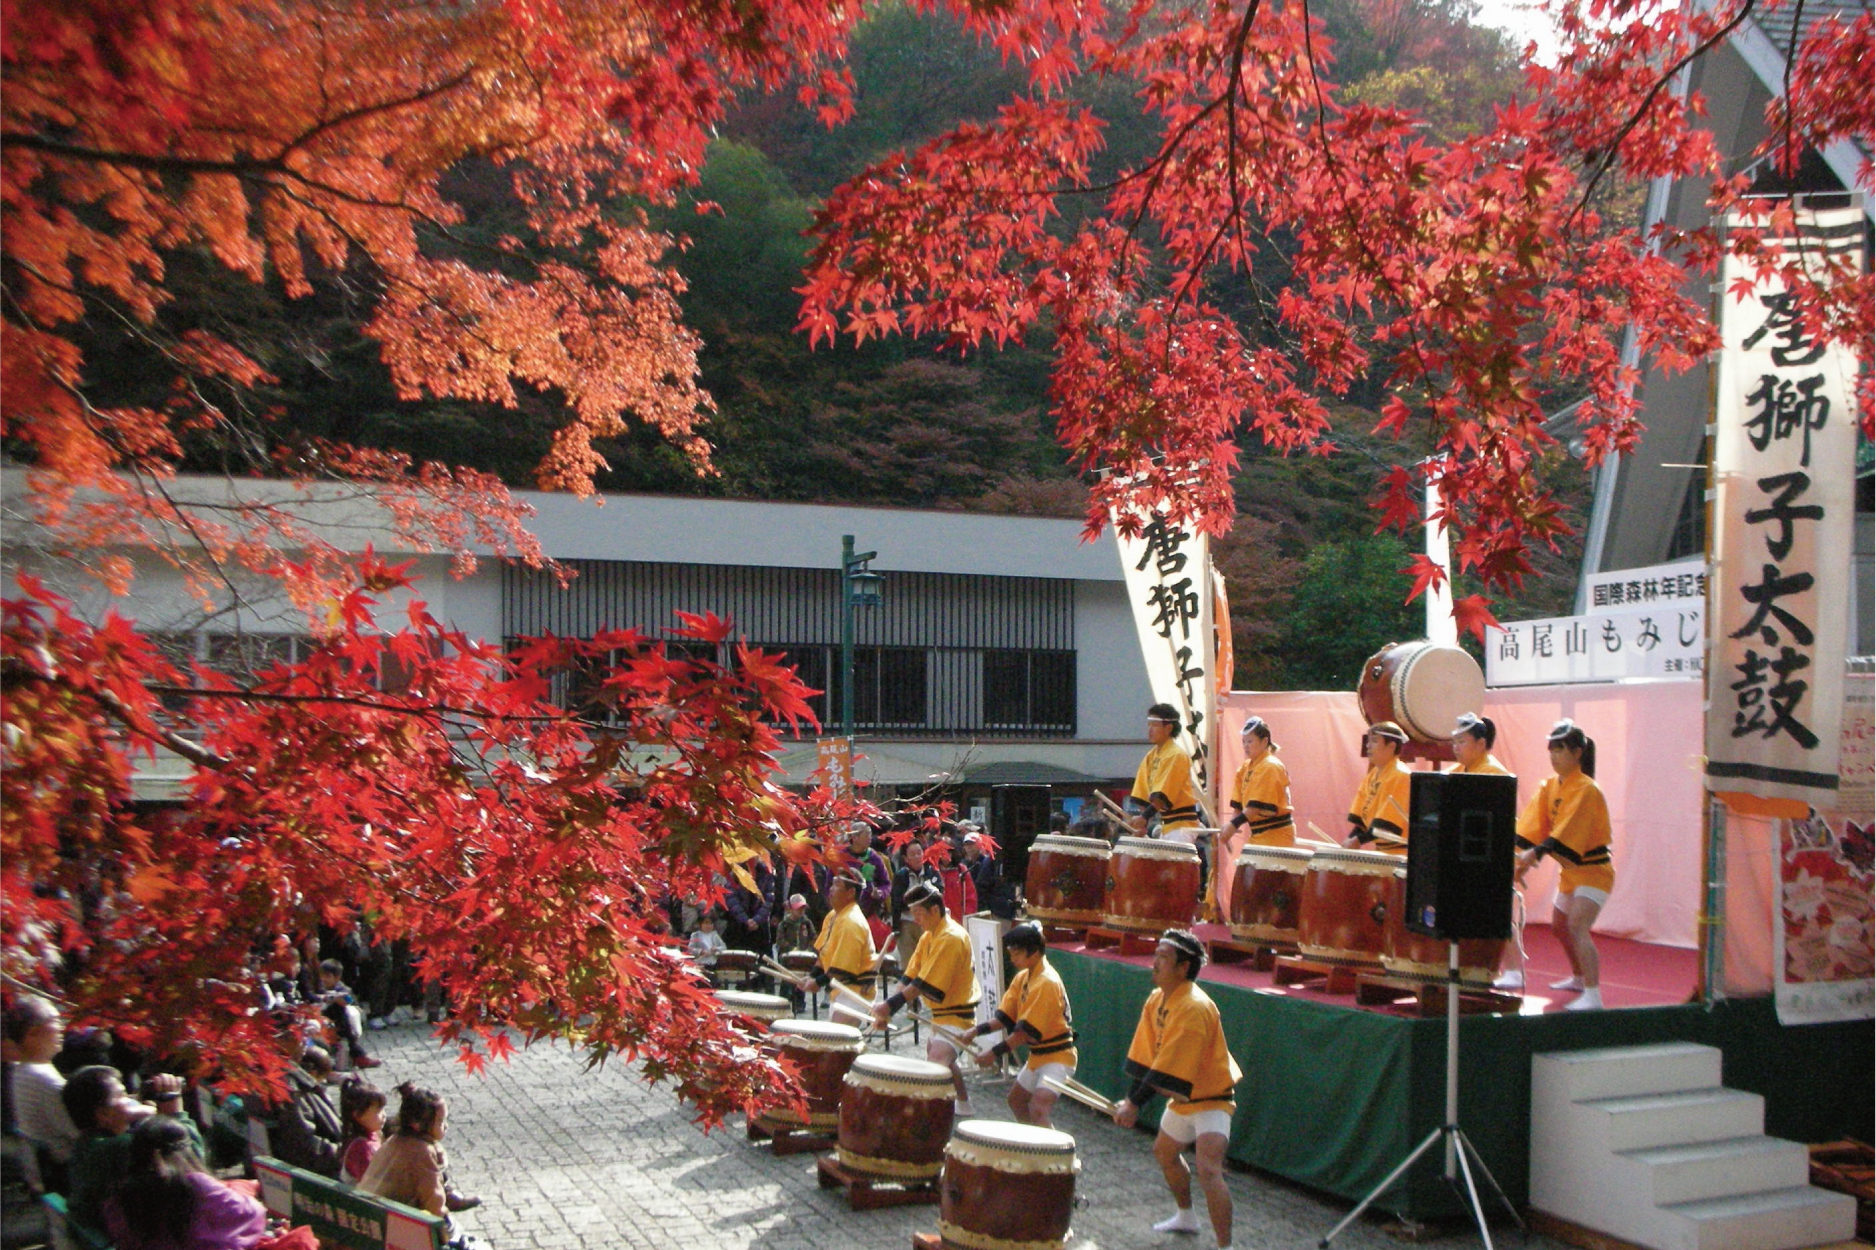 Mt. Takao Autumn Festival